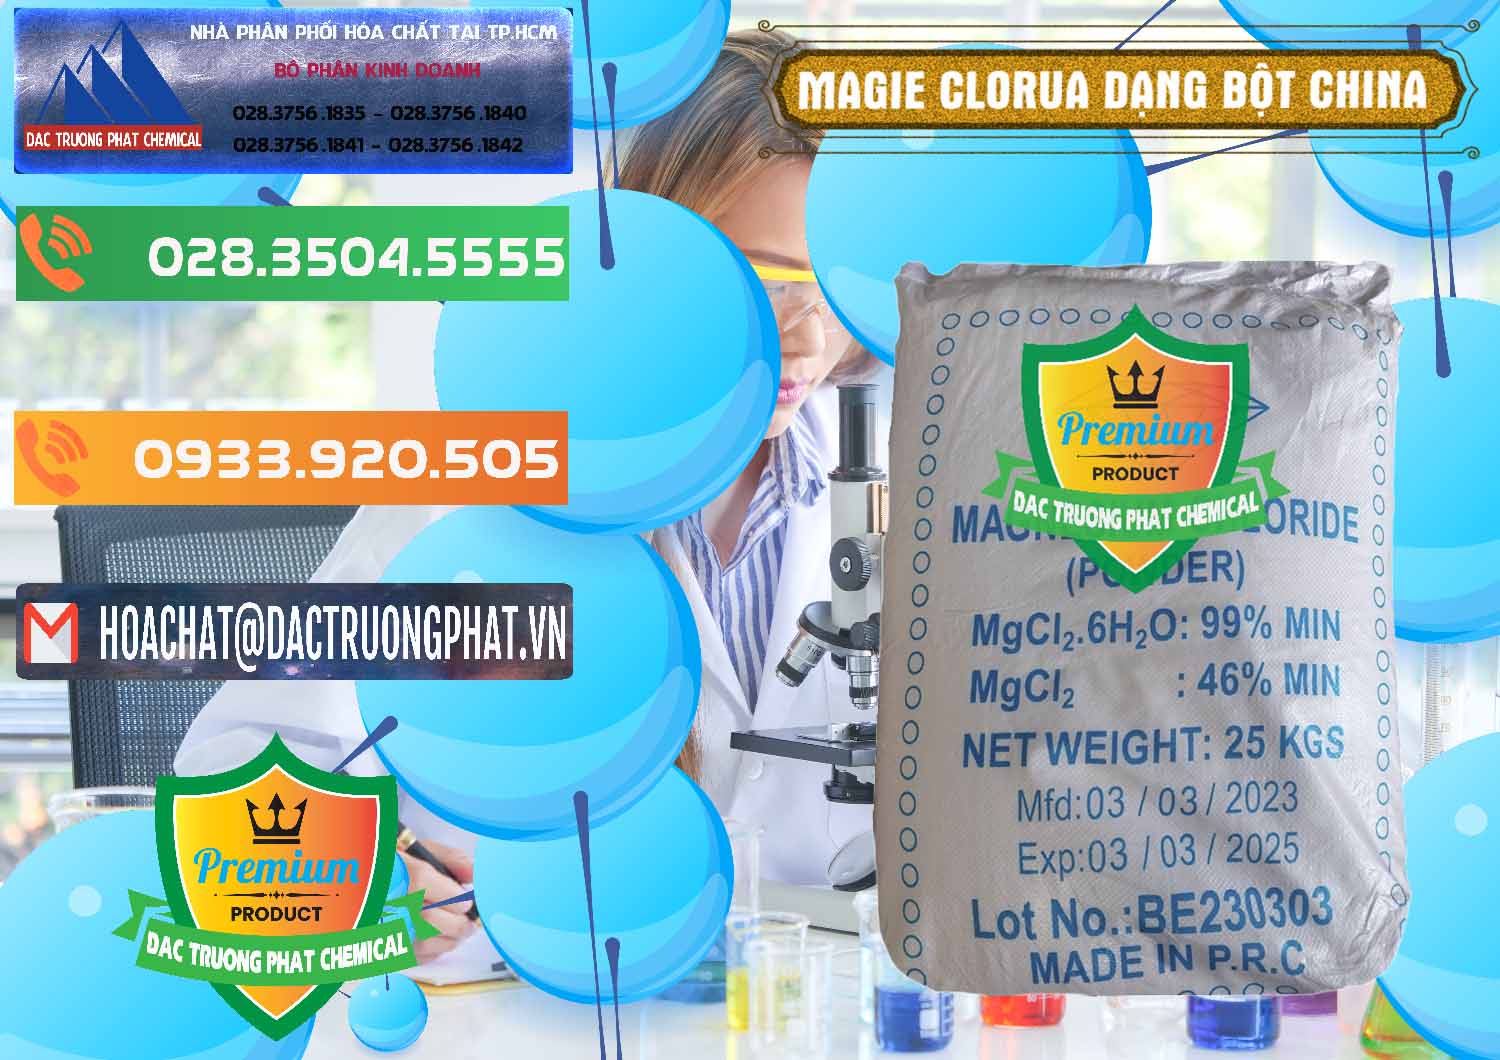 Nơi chuyên kinh doanh & bán Magie Clorua – MGCL2 96% Dạng Bột Logo Kim Cương Trung Quốc China - 0387 - Chuyên phân phối - kinh doanh hóa chất tại TP.HCM - hoachatxulynuoc.com.vn